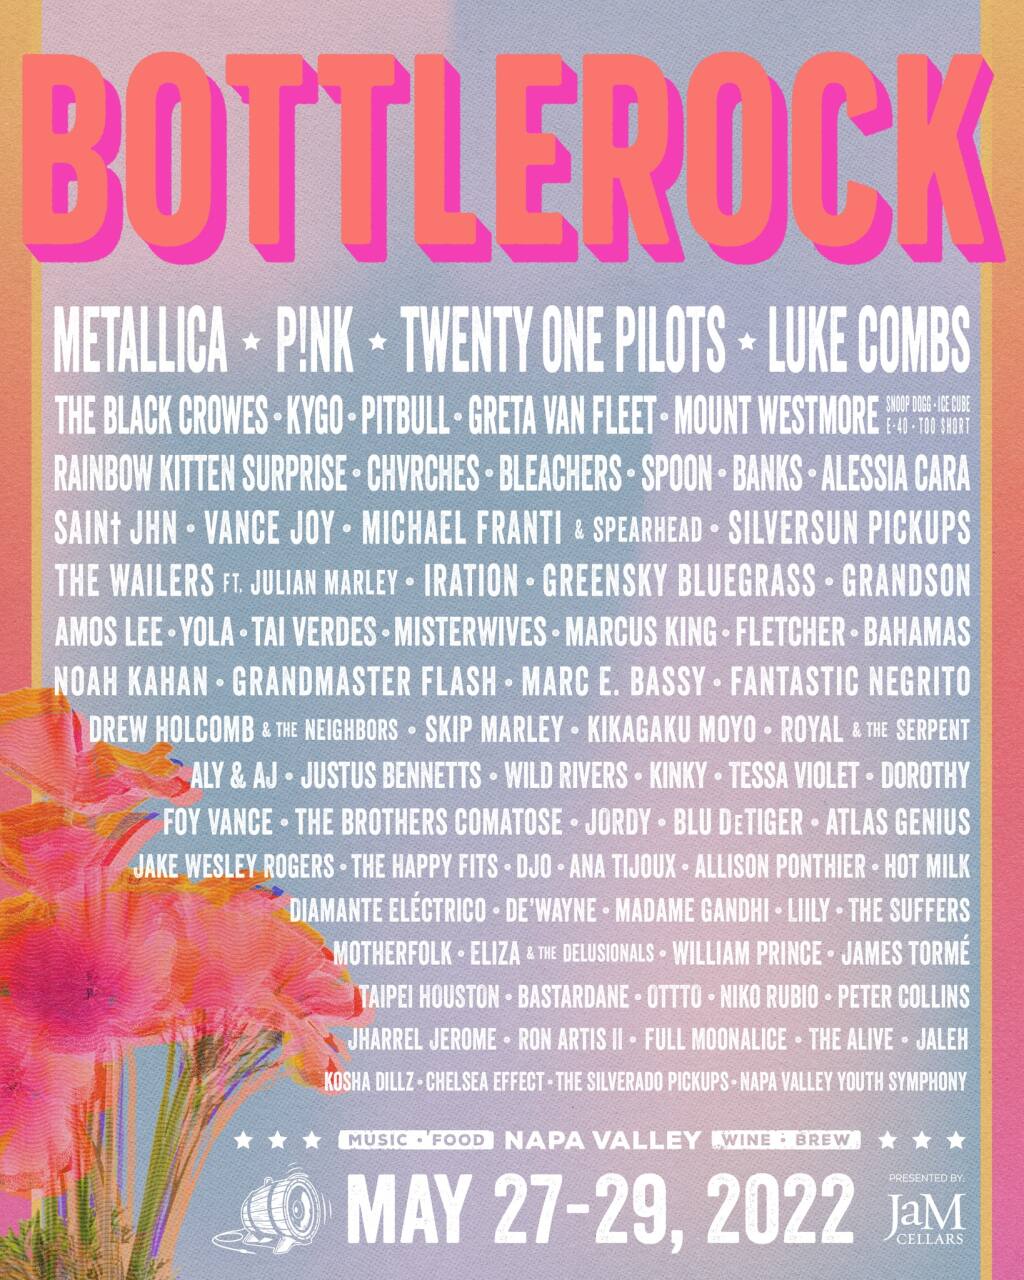 bottlerock 2022 lineup